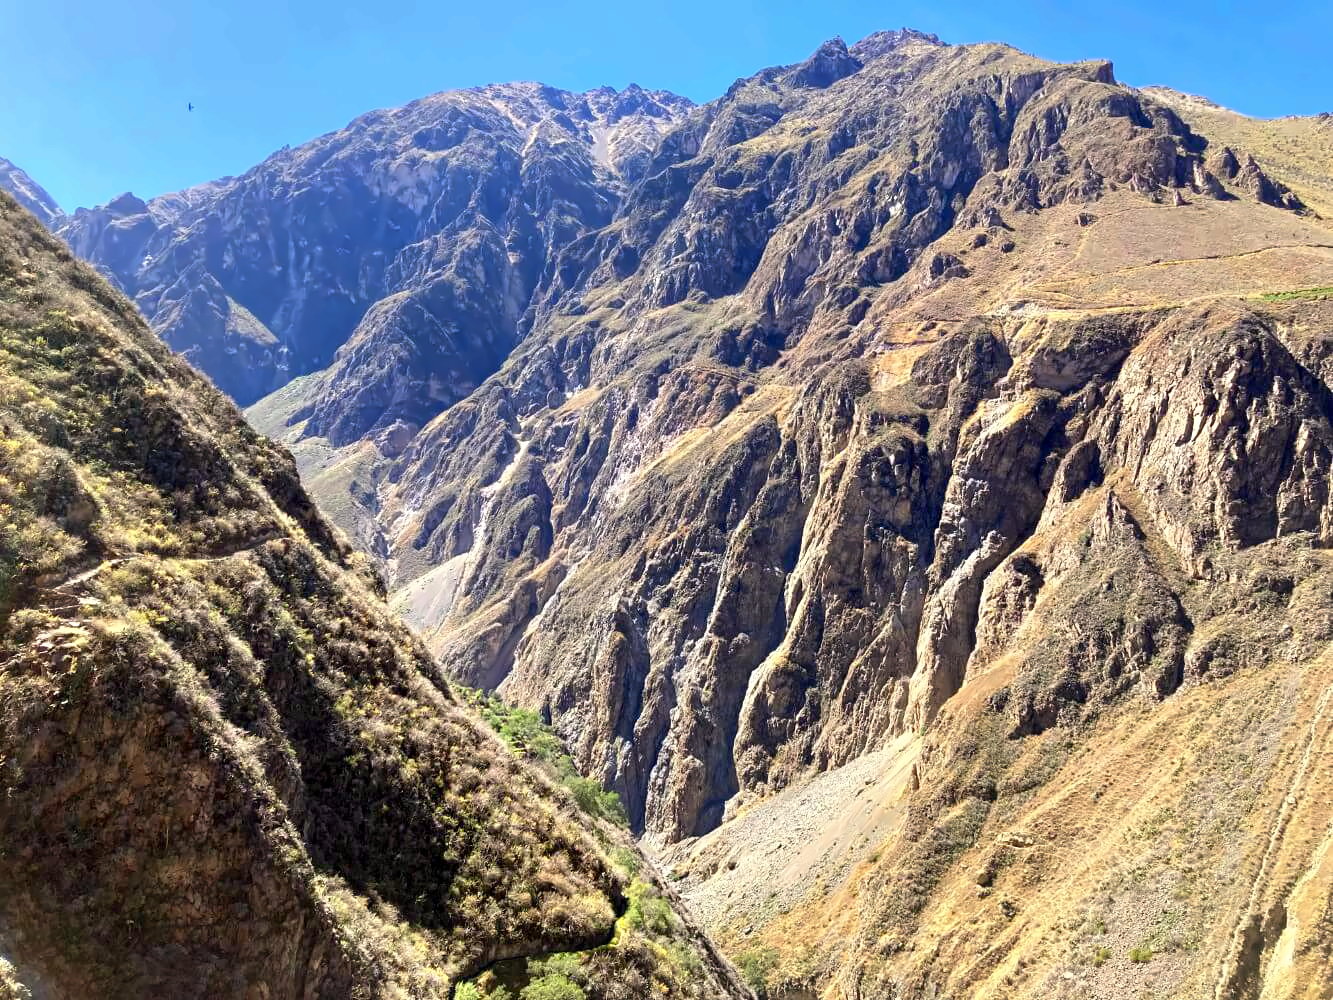 Blick in den Colca Canyon mit Kondor am Himmel.